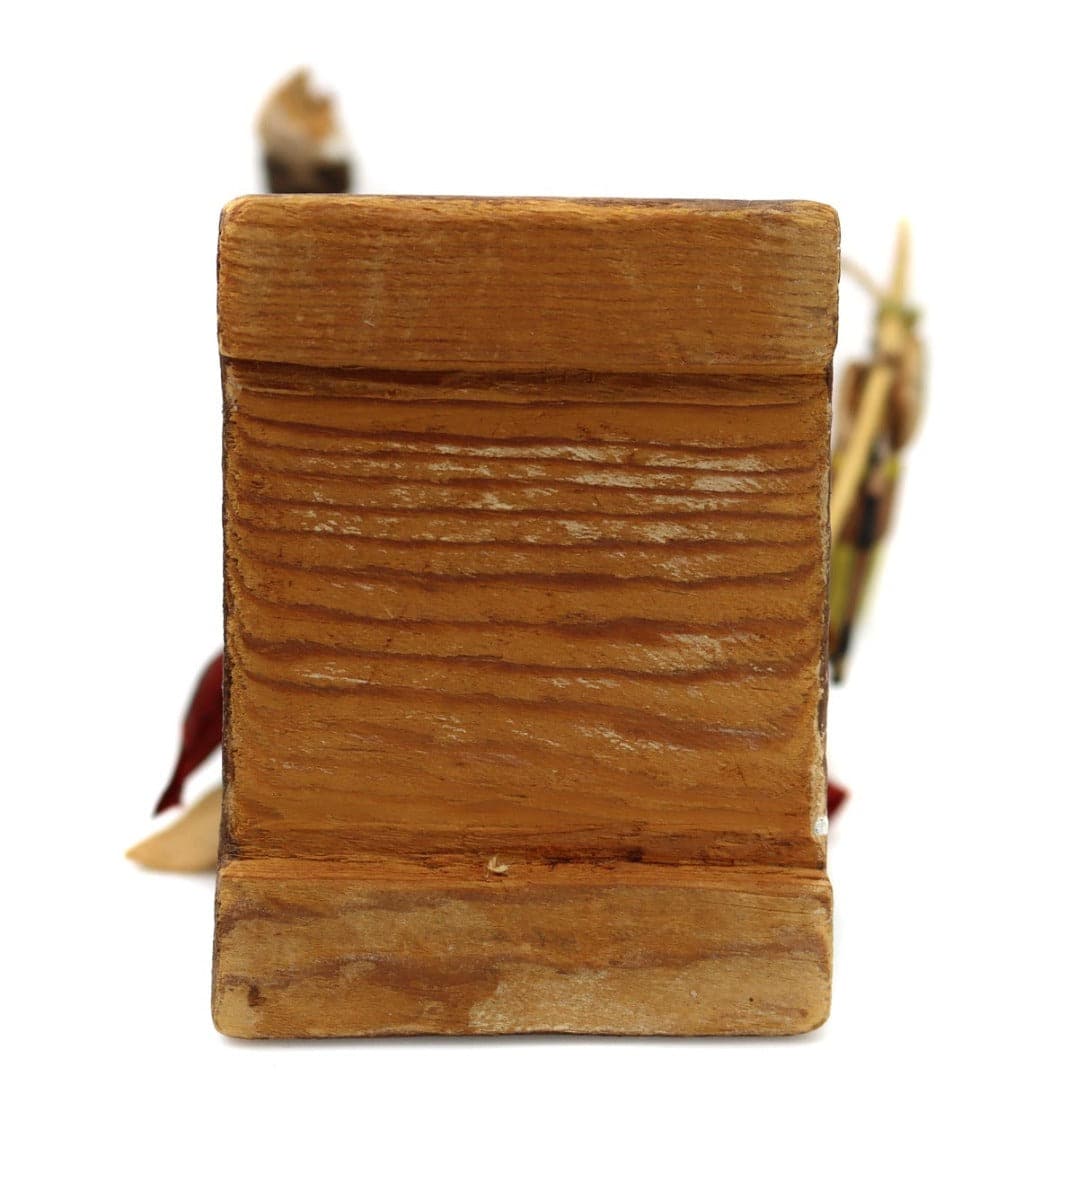 Hopi Long-Billed Kachina c. 1940s, 12" x 4.75" x 5.5" (K90234C-0622-001)